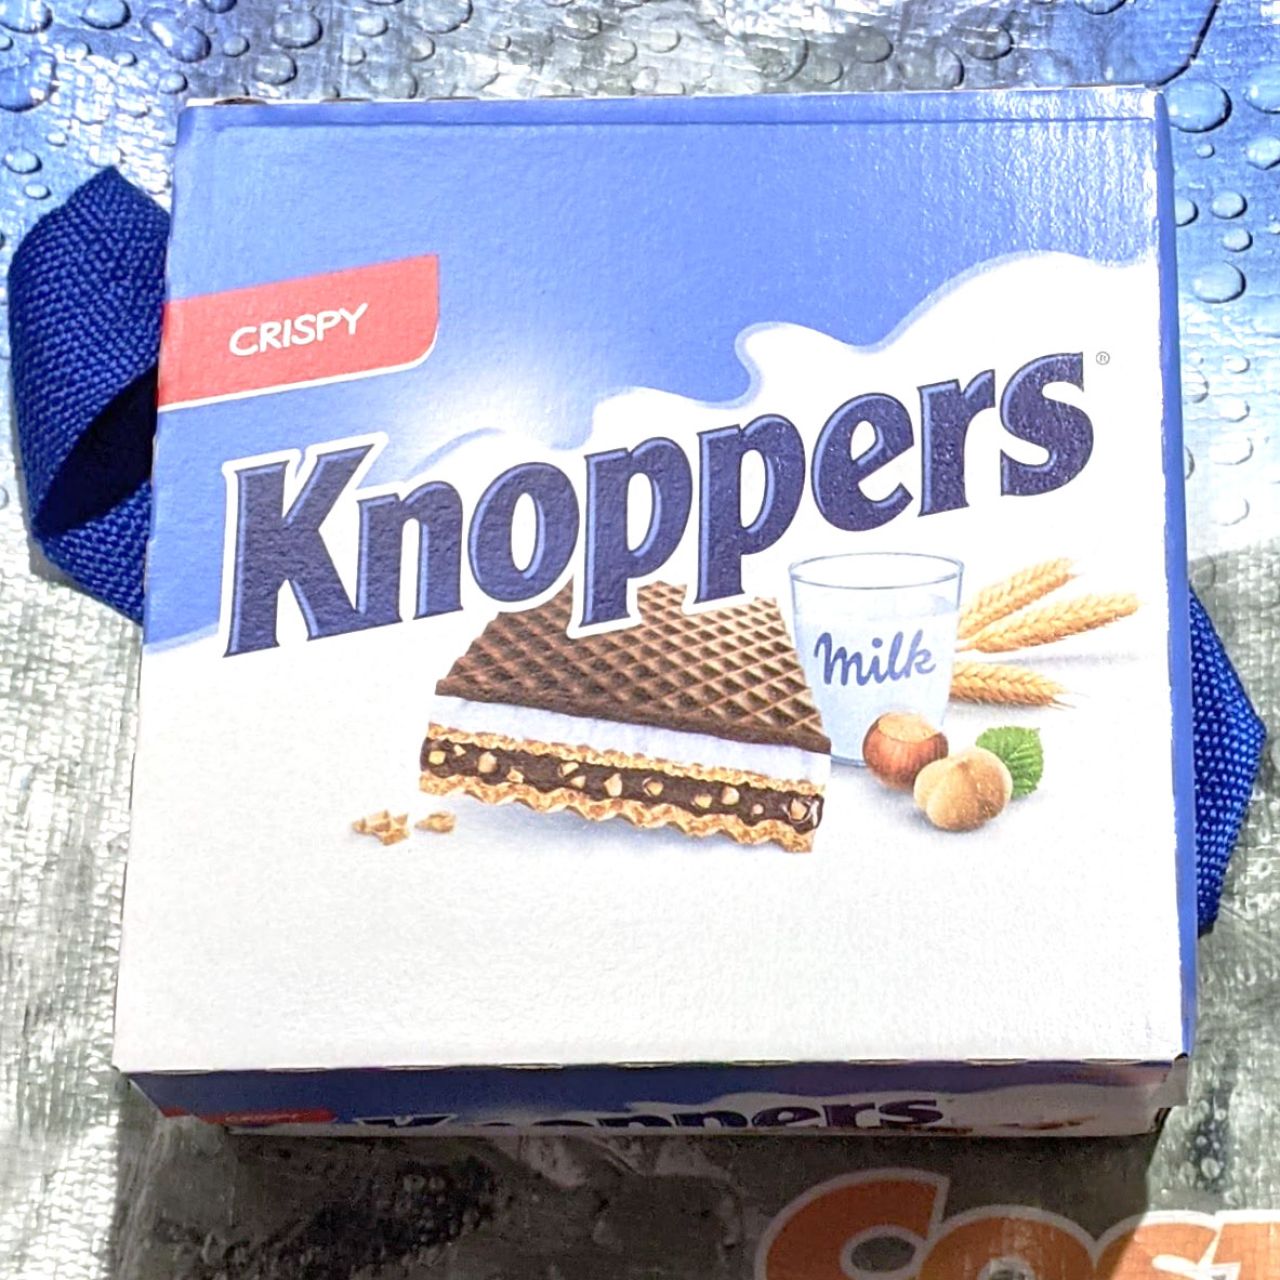 クノッパーズ チョコレートウェハースのクチコミ:コストコで在庫番